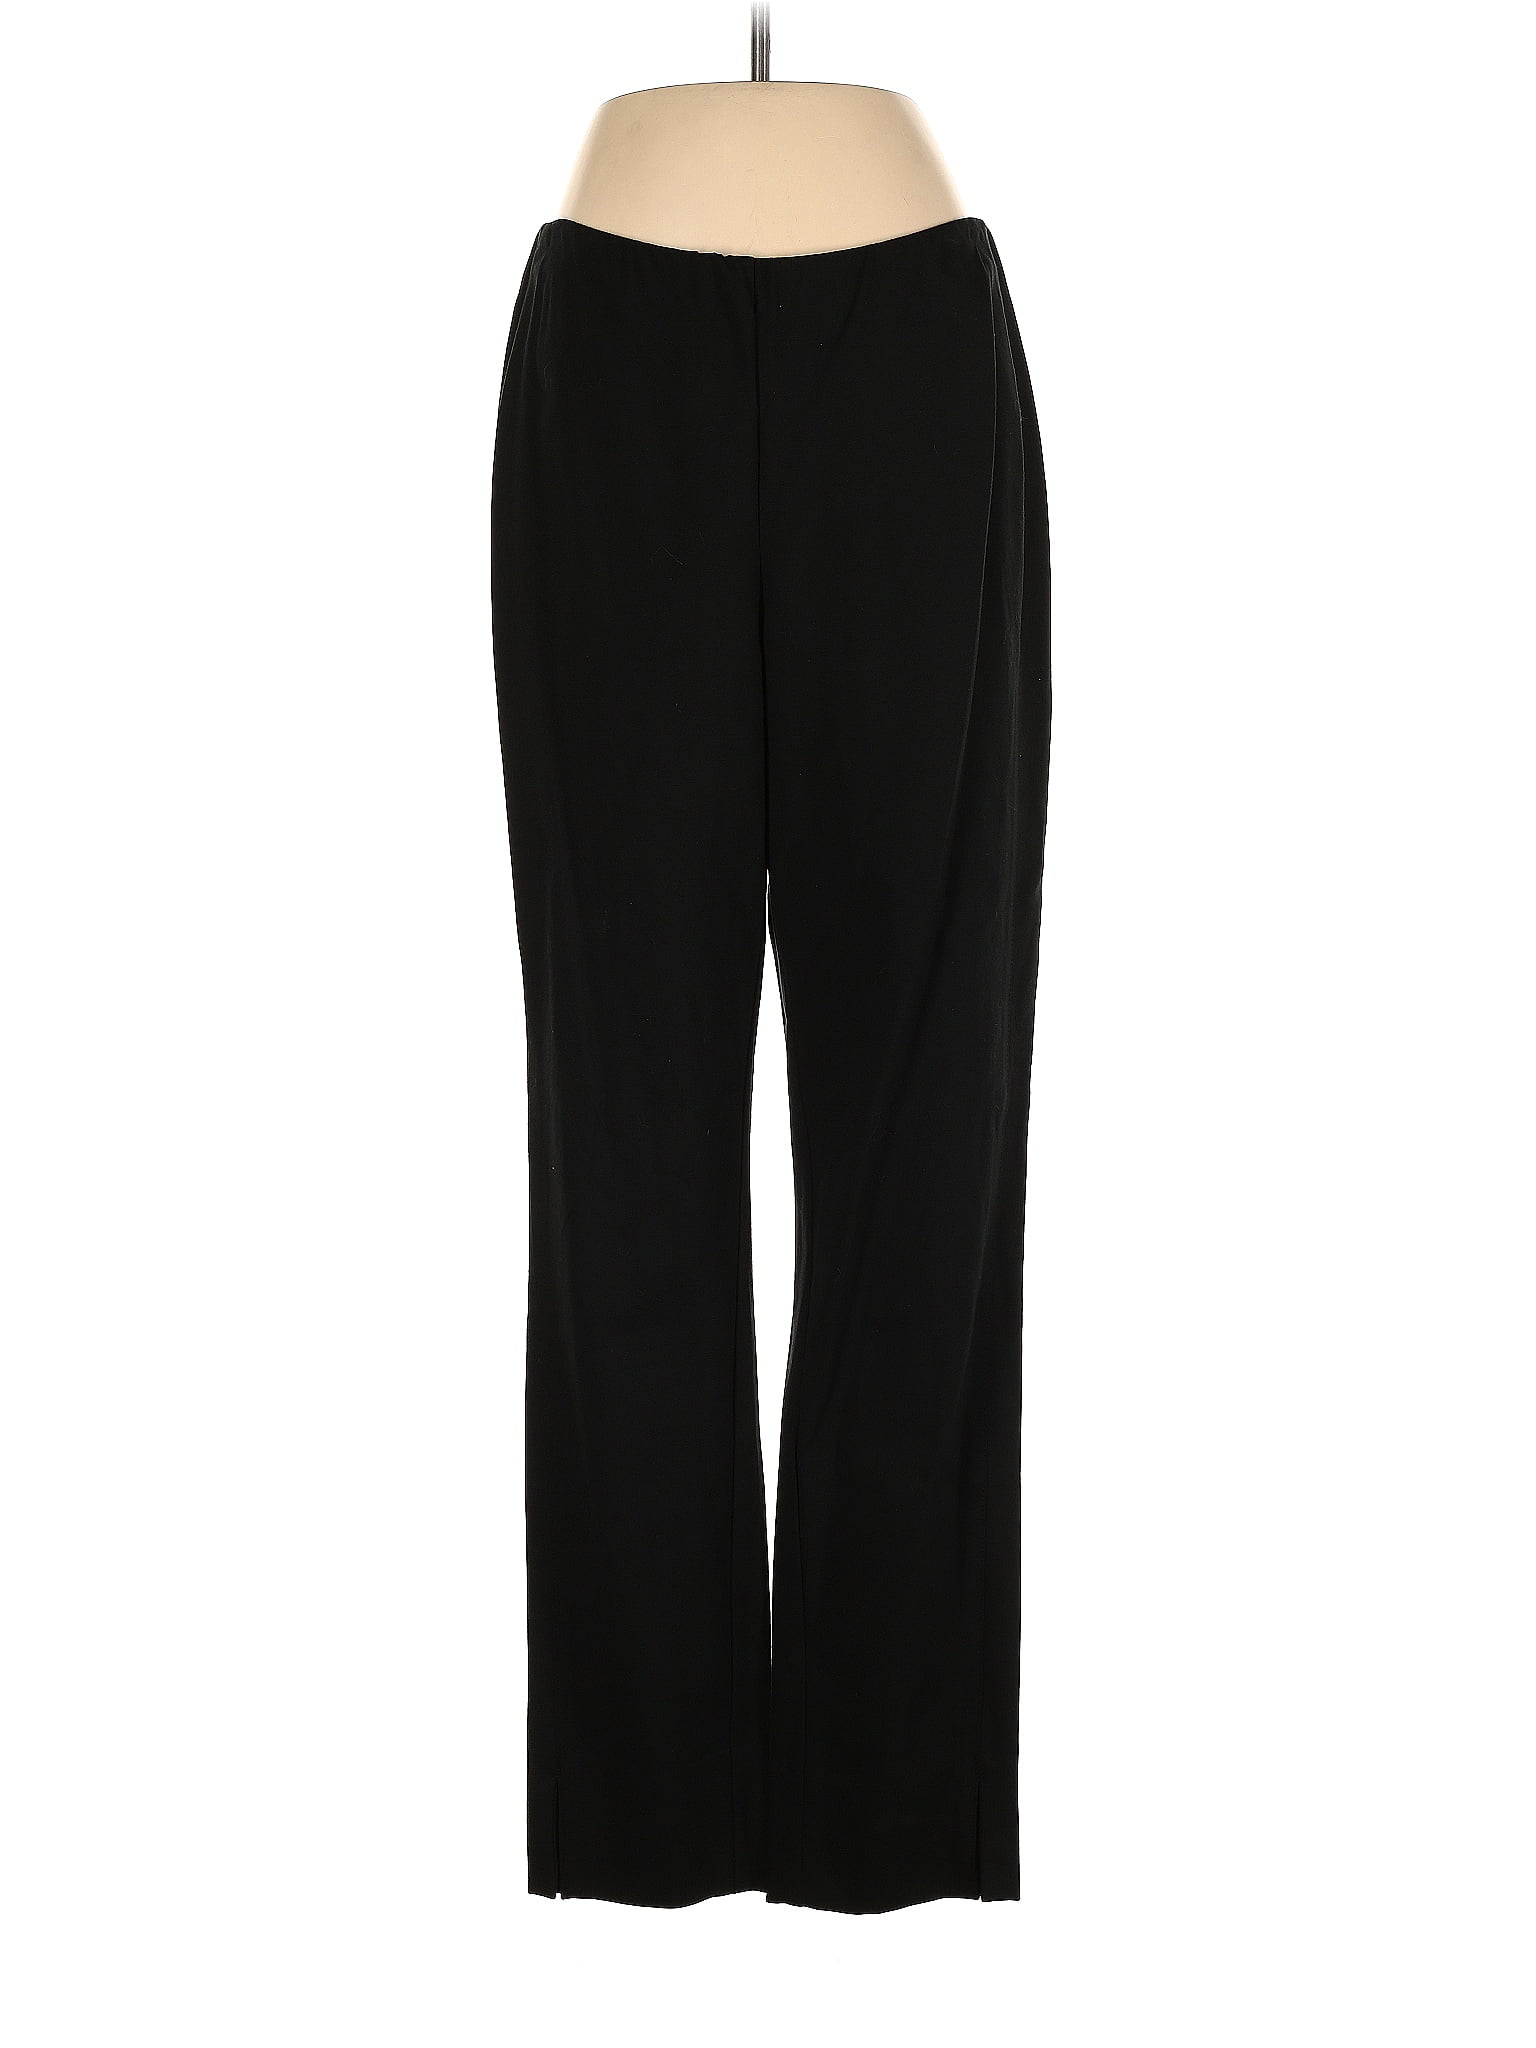 J.Jill Black Dress Pants Size M - 75% off | ThredUp